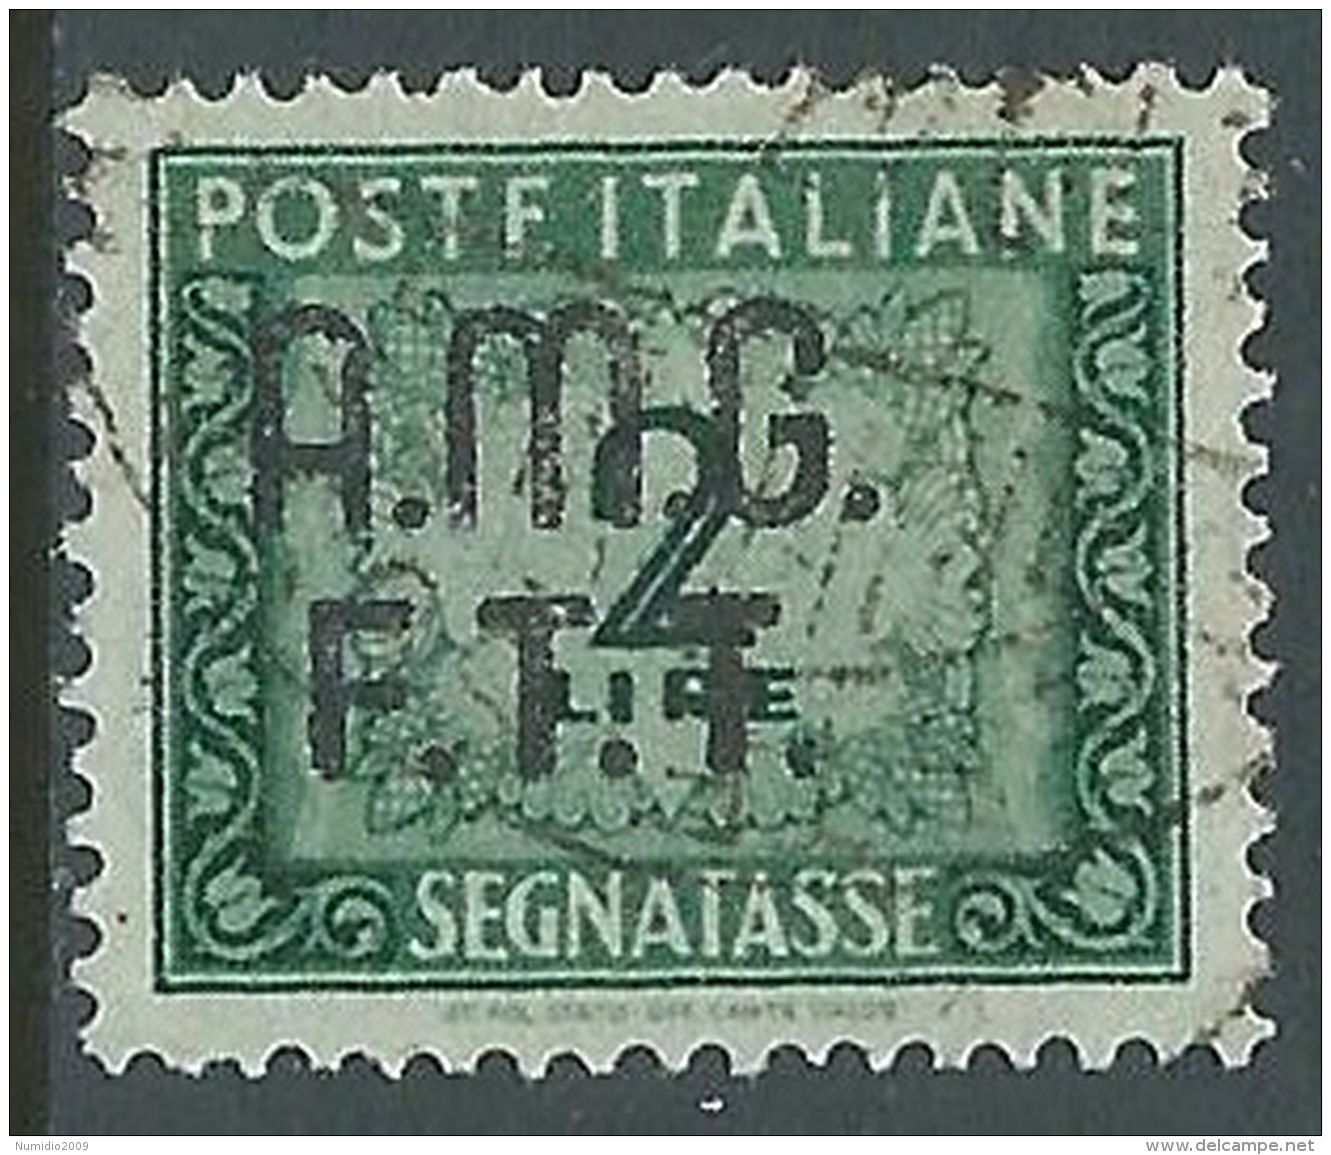 1947-49 TRIESTE A SEGNATASSE USATO 2 LIRE - LL11 - Postage Due